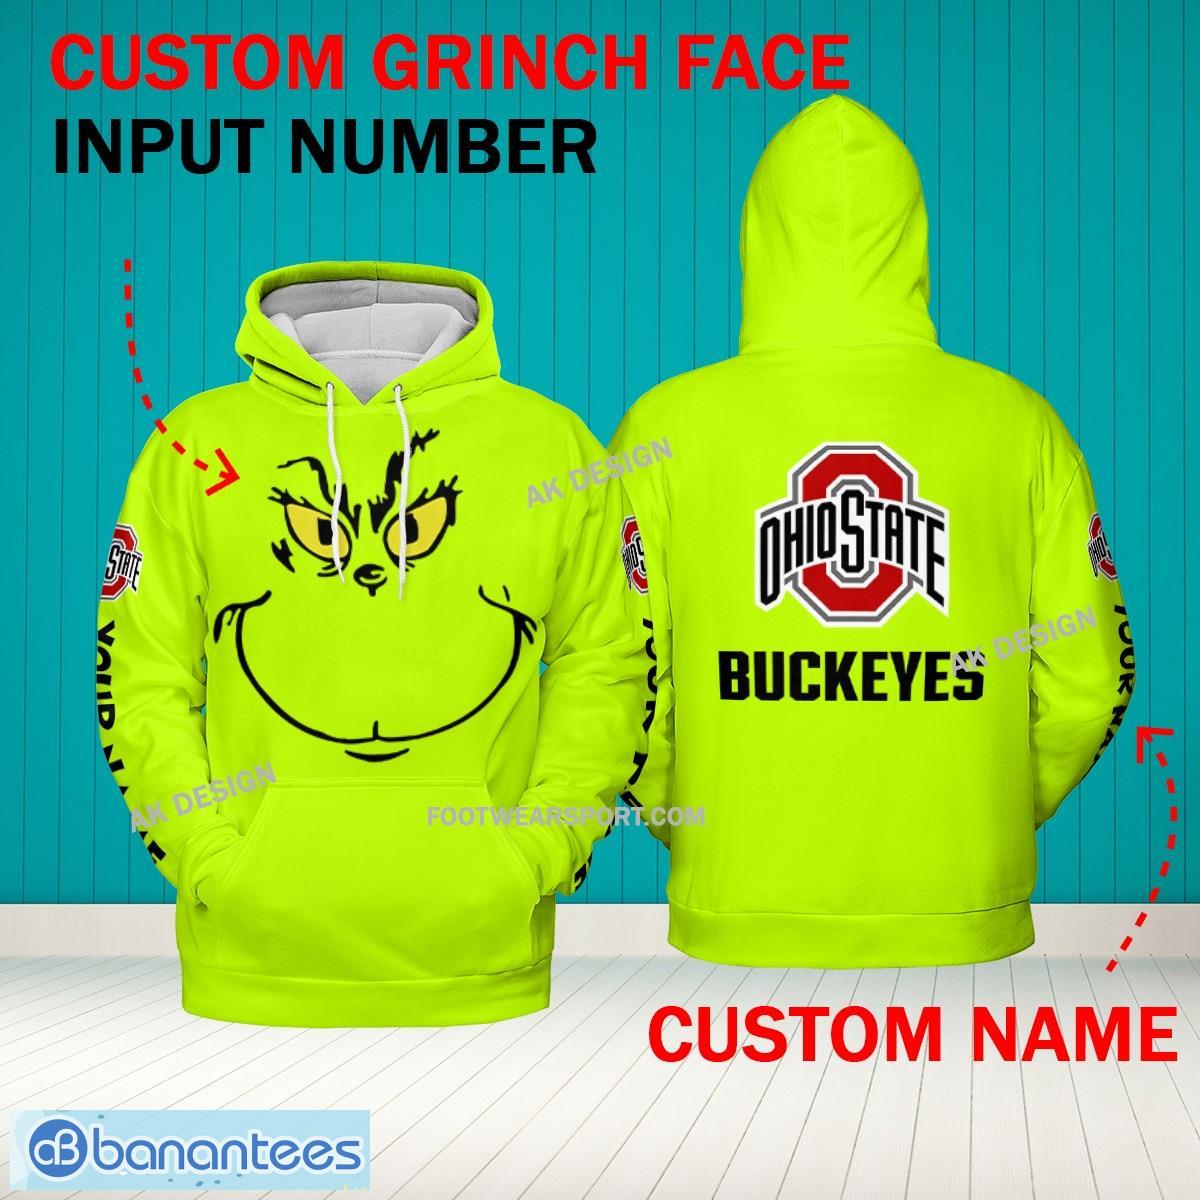 Grinch Face Ohio State Buckeyes 3D Hoodie, Zip Hoodie, Sweater Green AOP Custom Number And Name - Grinch Face NCAA Ohio State Buckeyes 3D Hoodie